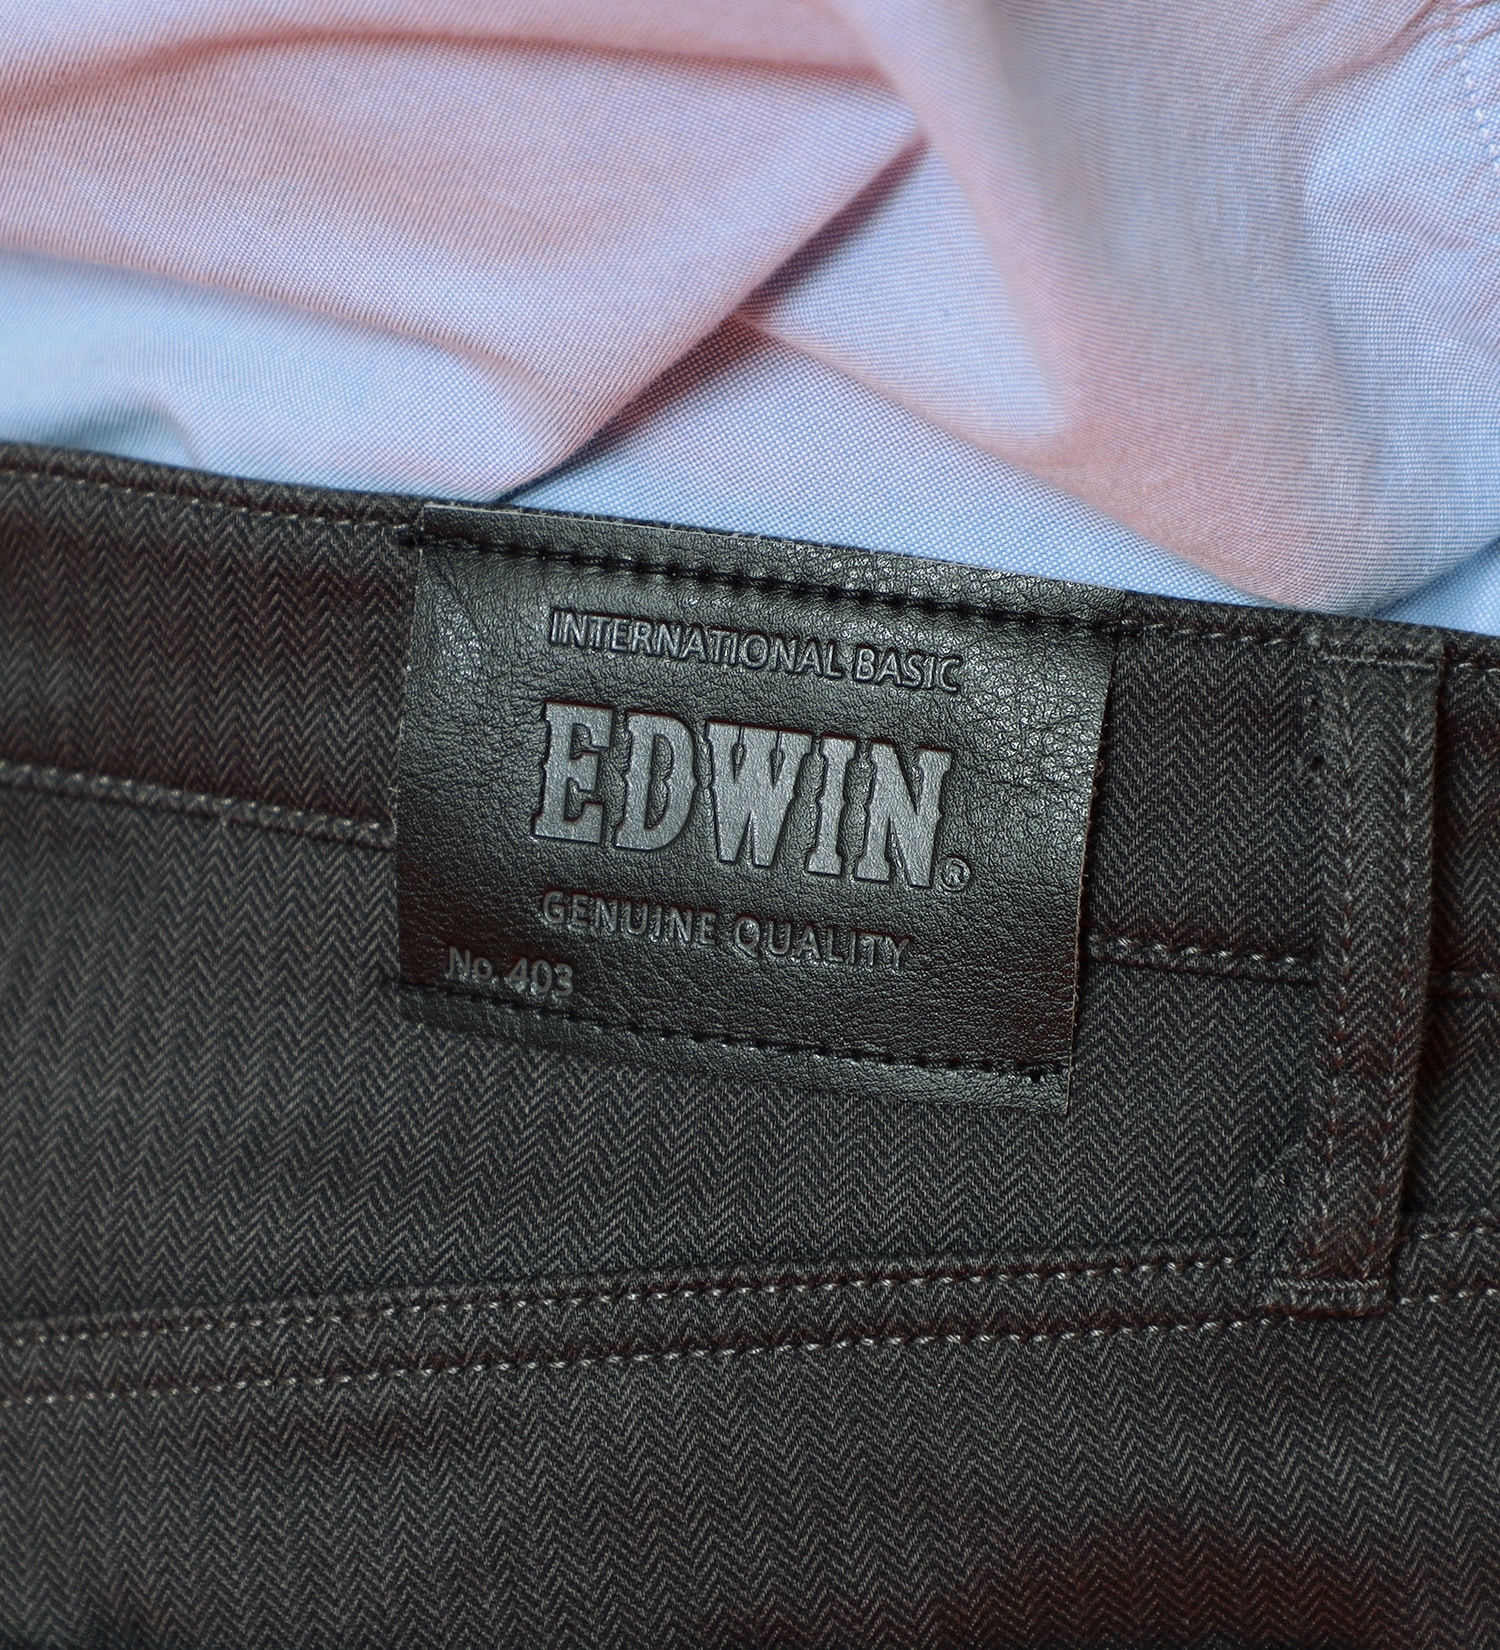 EDWIN(エドウイン)の【先行SALE】2層で暖かい EDWIN インターナショナルベーシック レギュラーストレートパンツ403 WILD FIRE 2層ボンディング構造 【暖】|パンツ/パンツ/メンズ|チャコールグレー